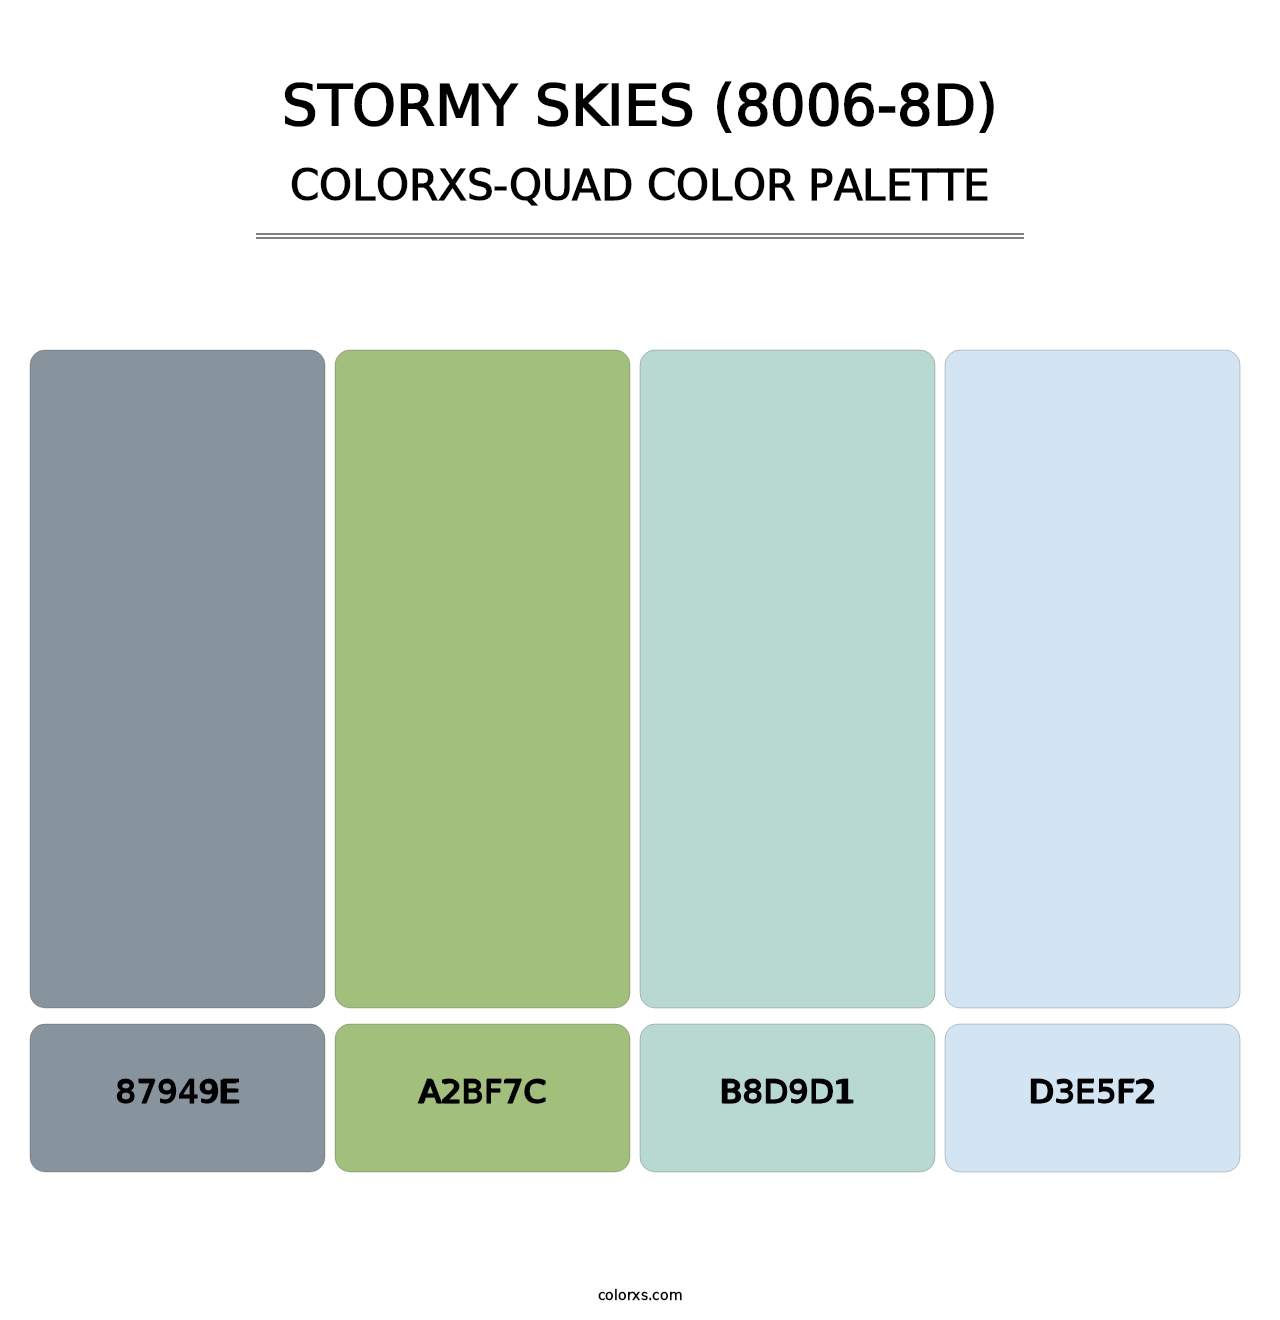 Stormy Skies (8006-8D) - Colorxs Quad Palette